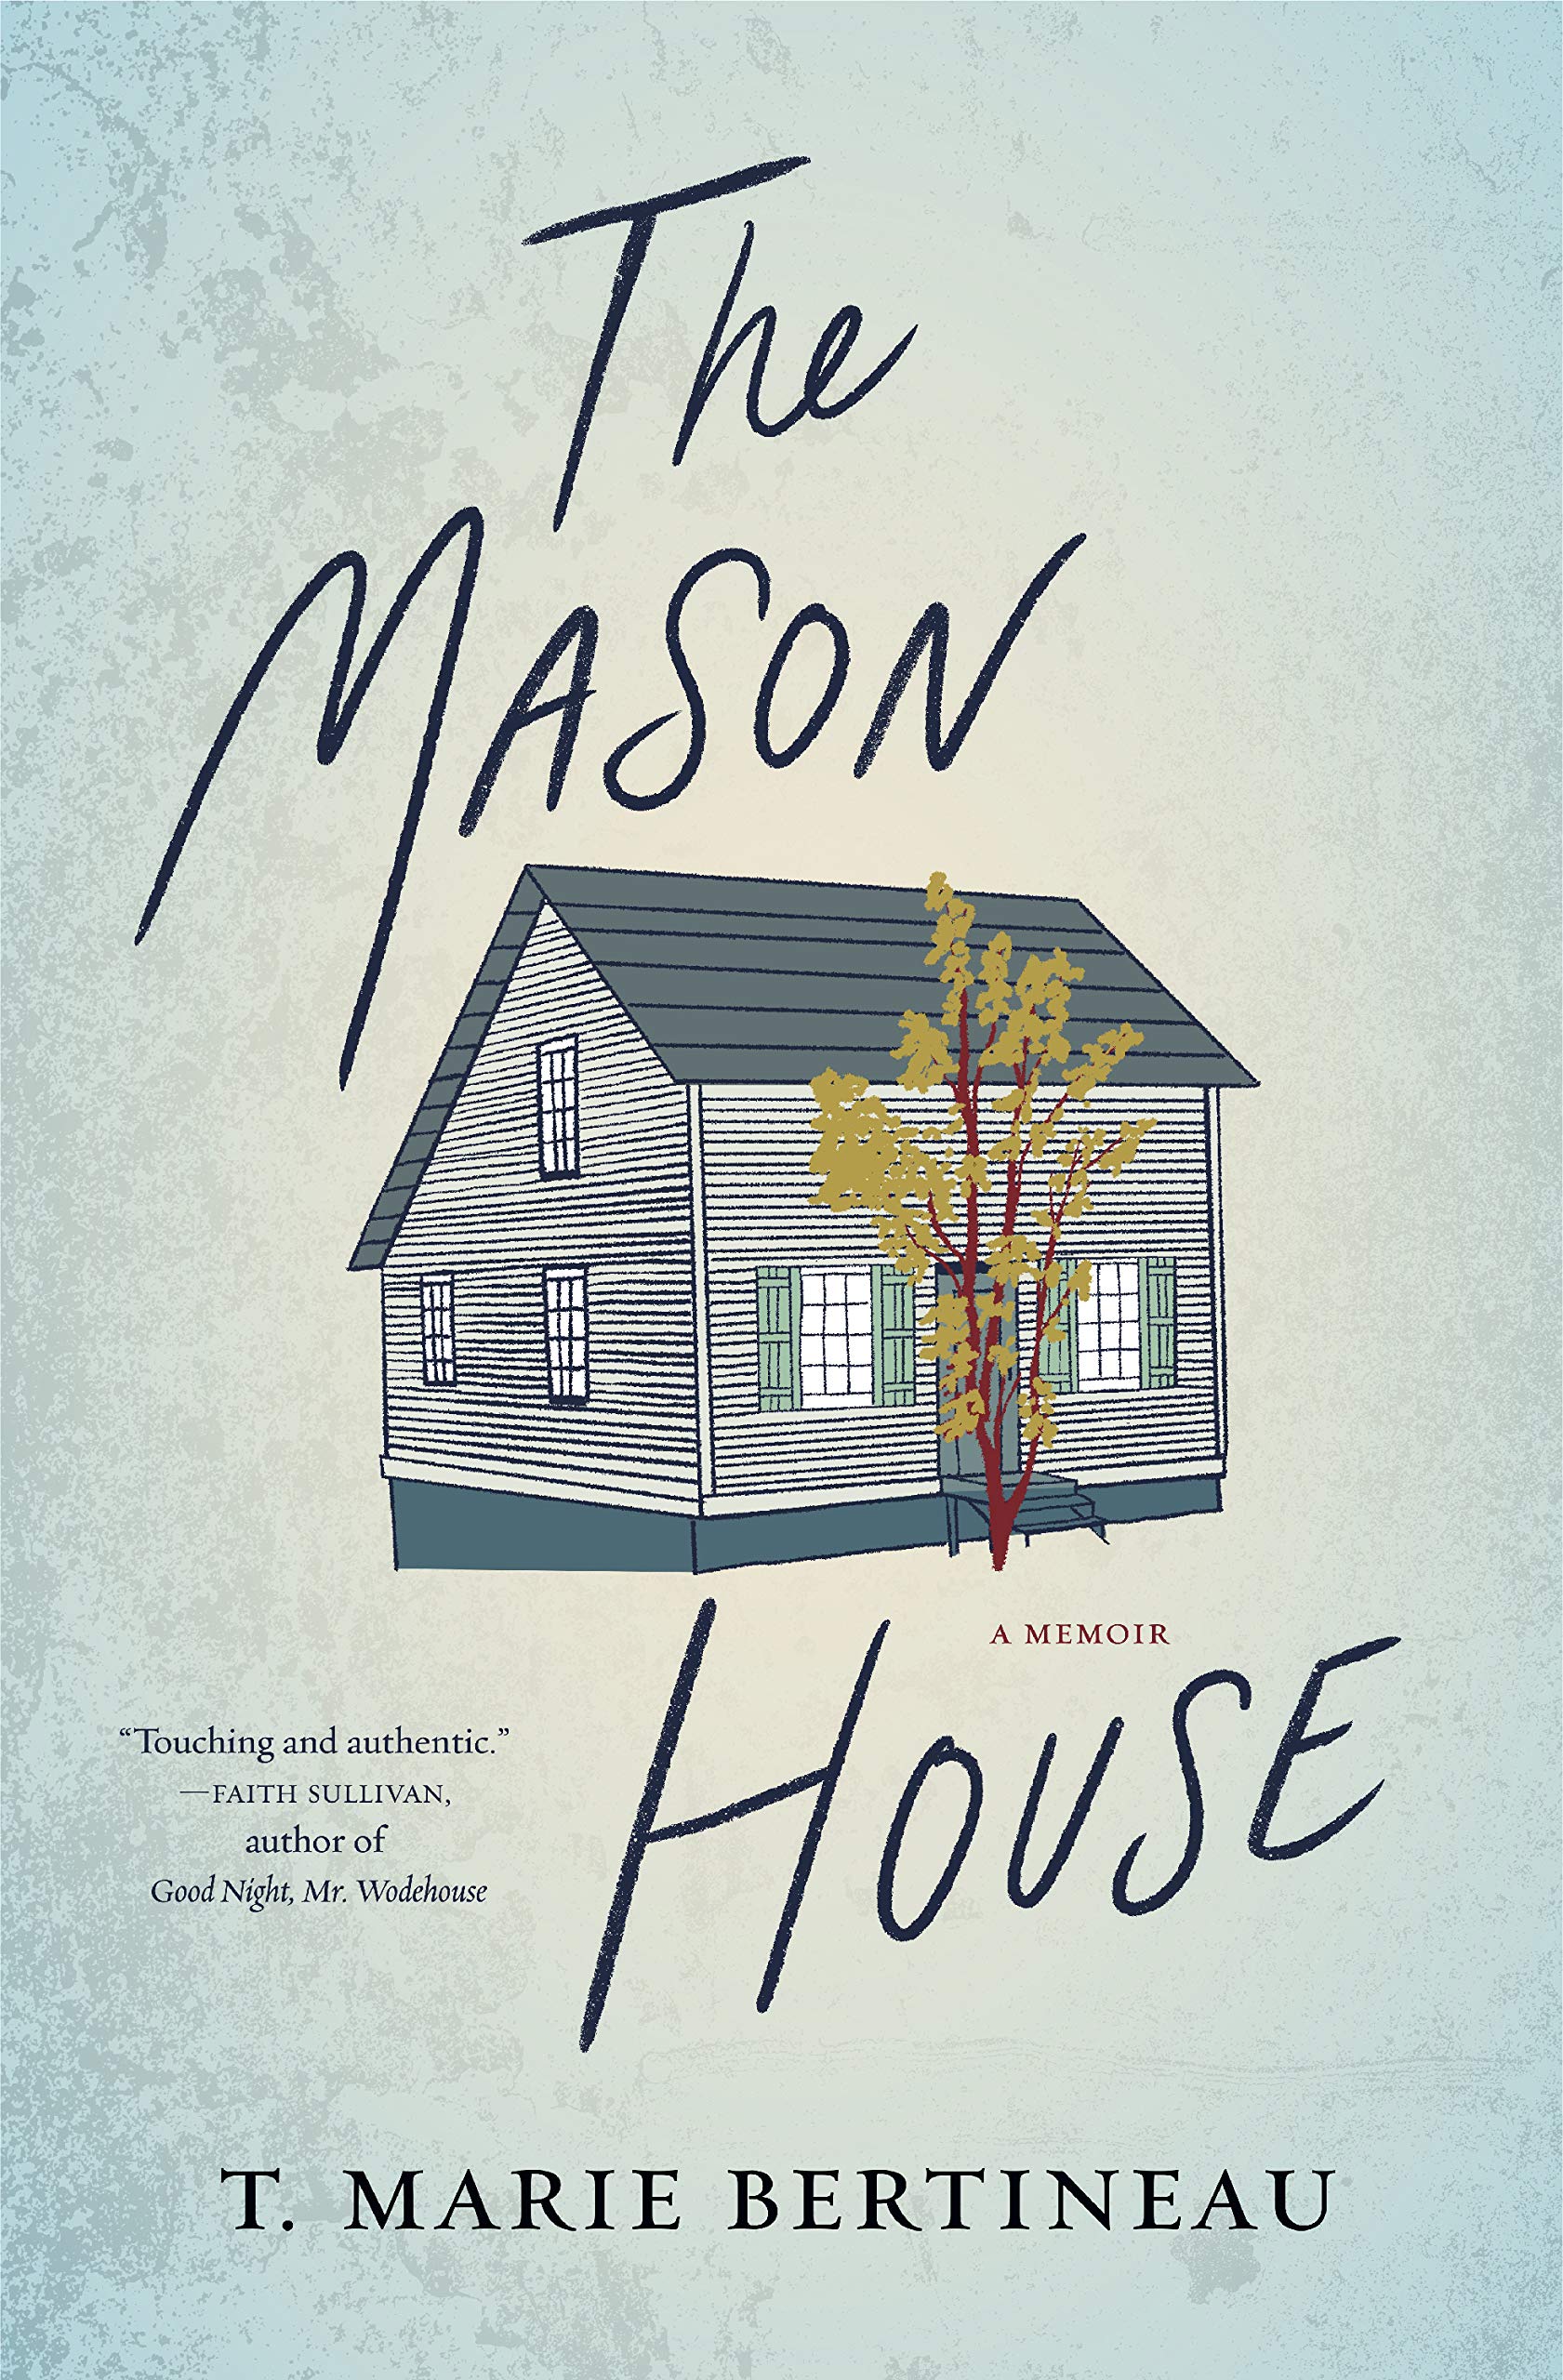 The Mason House: A Memoir